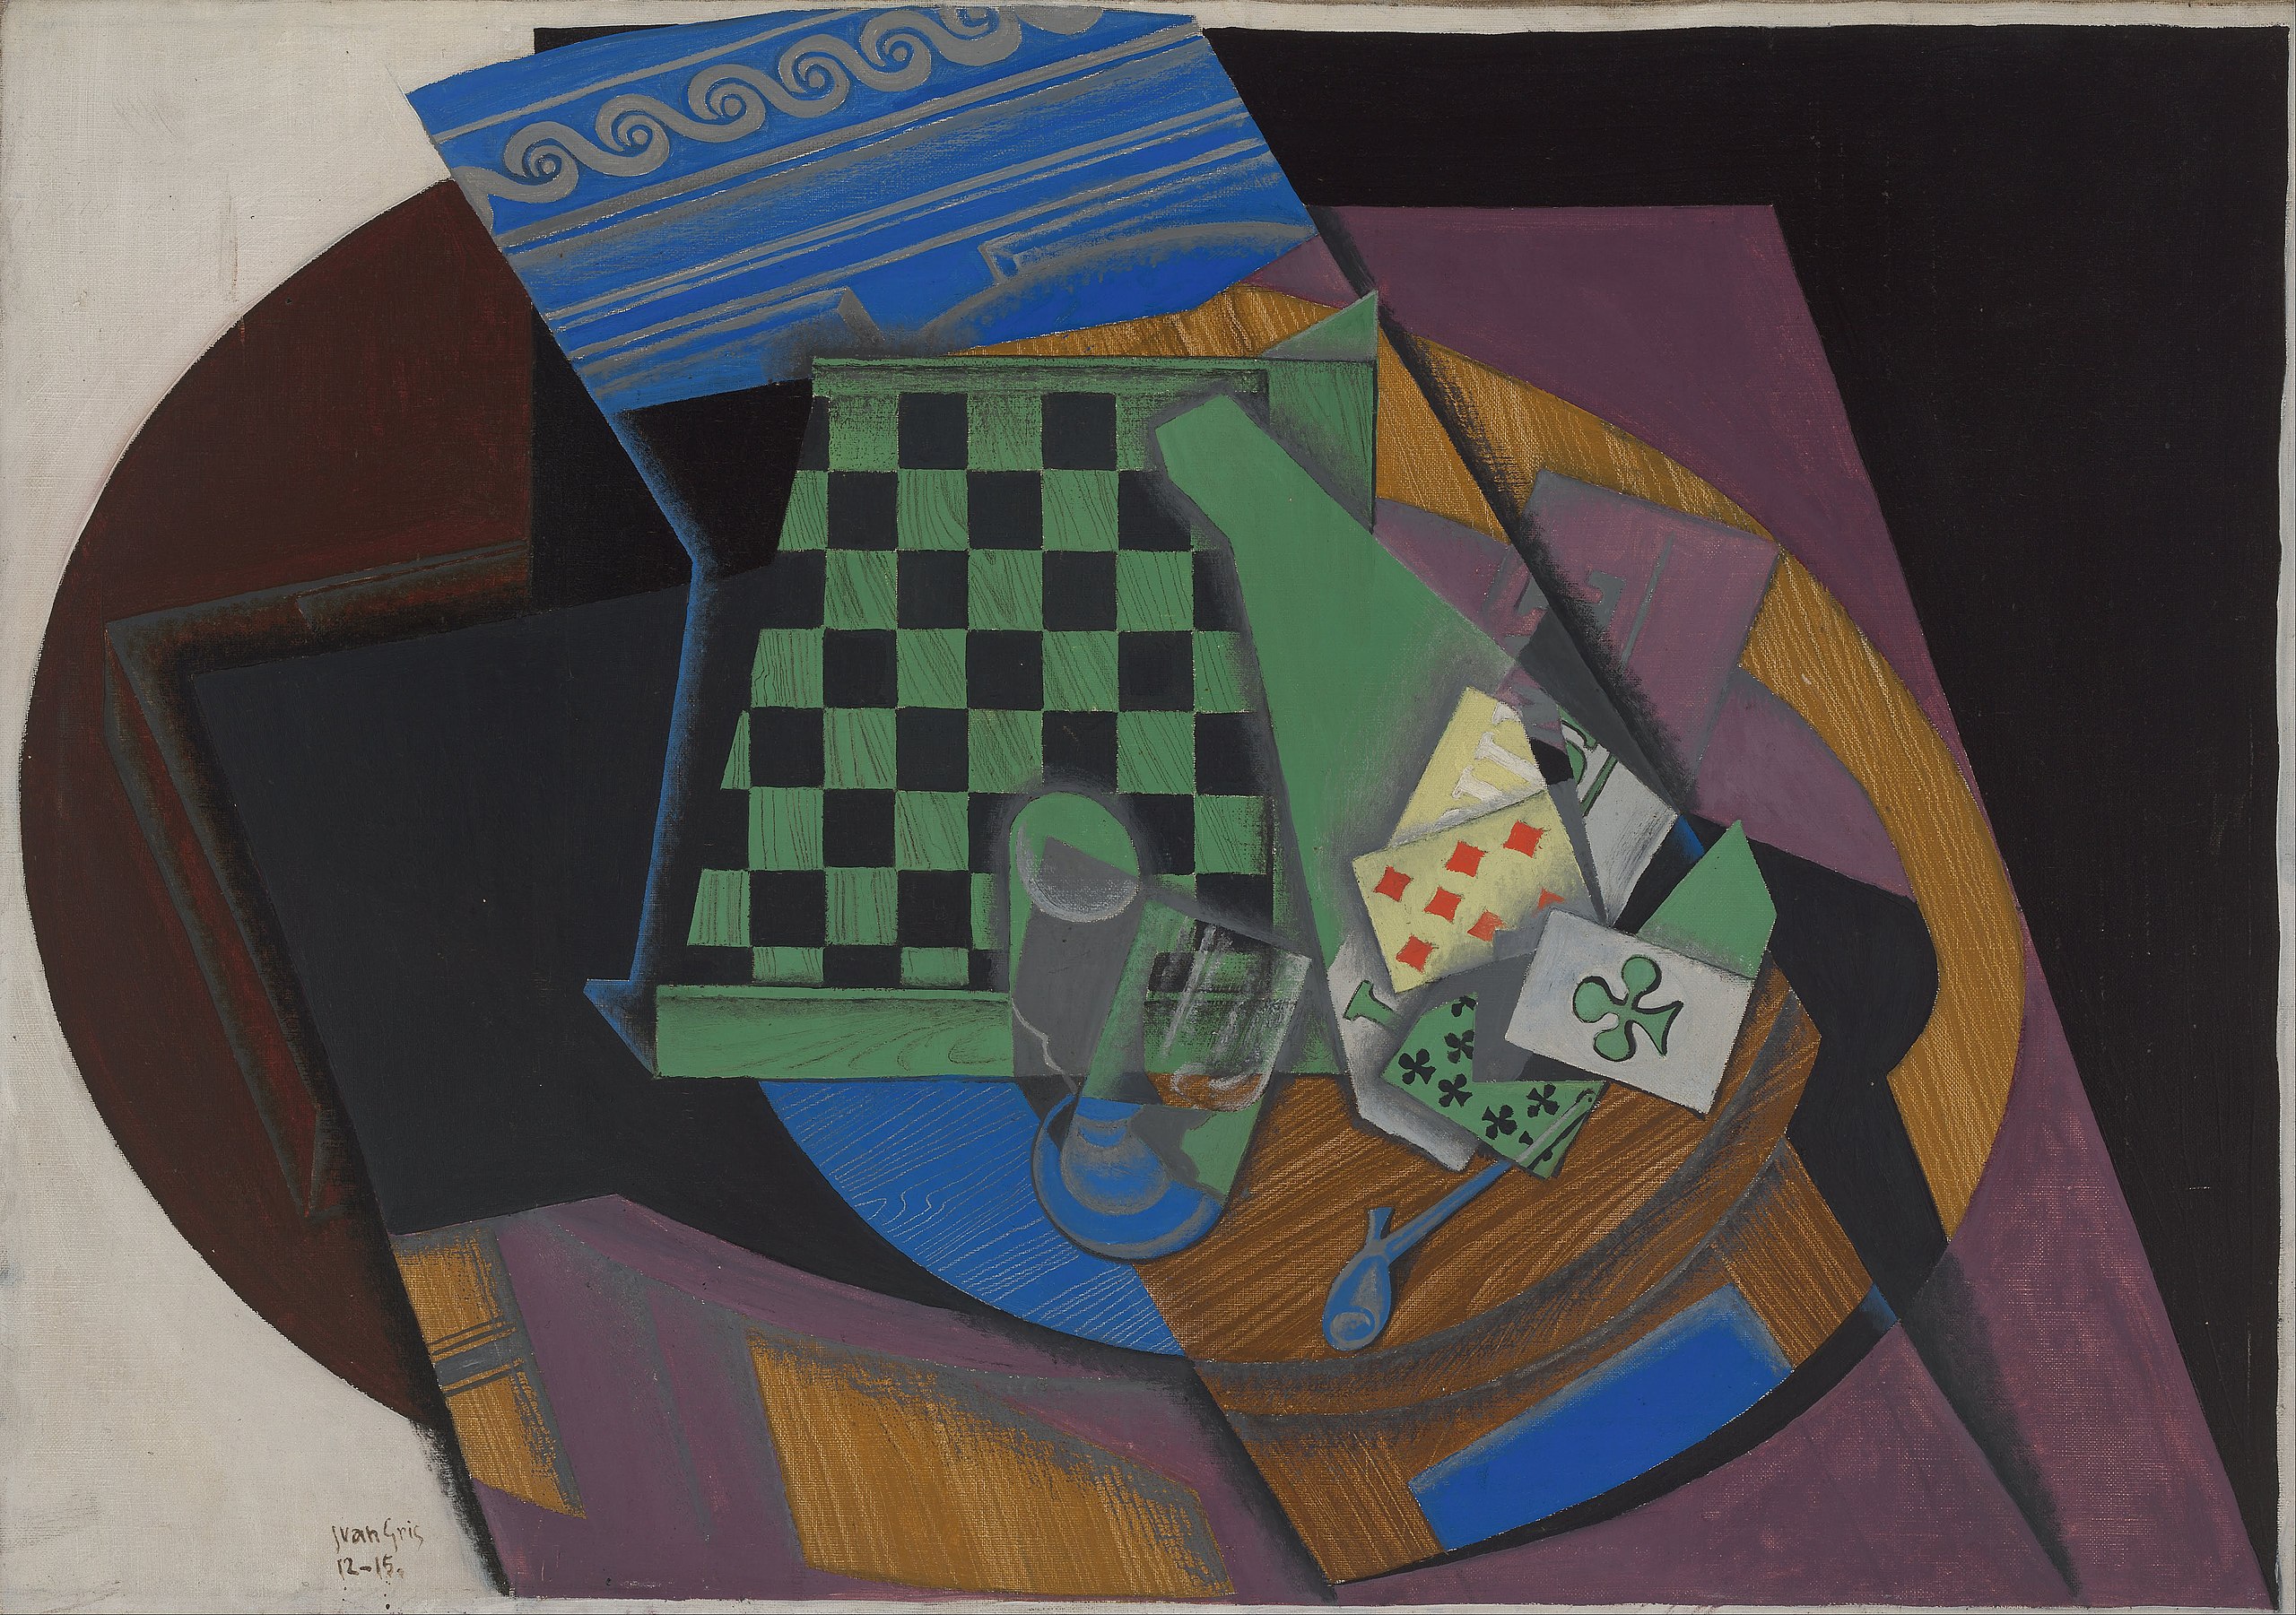 Schachbrett und Spielkarten by Juan Gris - 1915 - 92 x 65 cm National Gallery of Australia